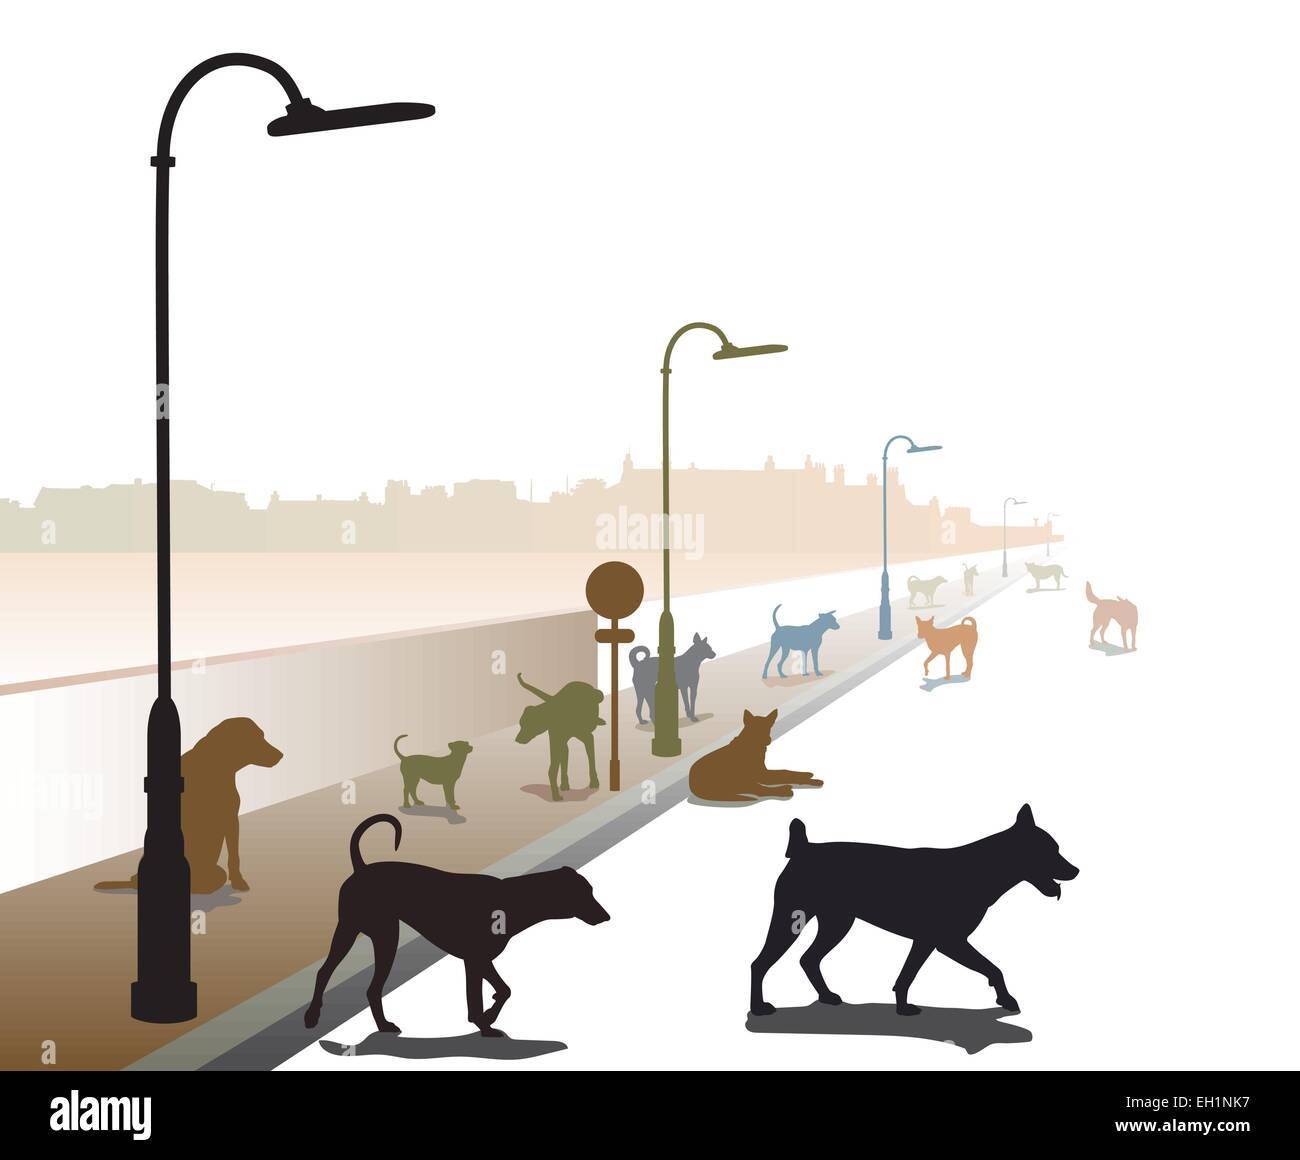 Bearbeitbares Vektor-Illustration einer bunt zusammengewürfelten Gruppe von streunenden Hunden auf einer einsamen Straße Stock Vektor